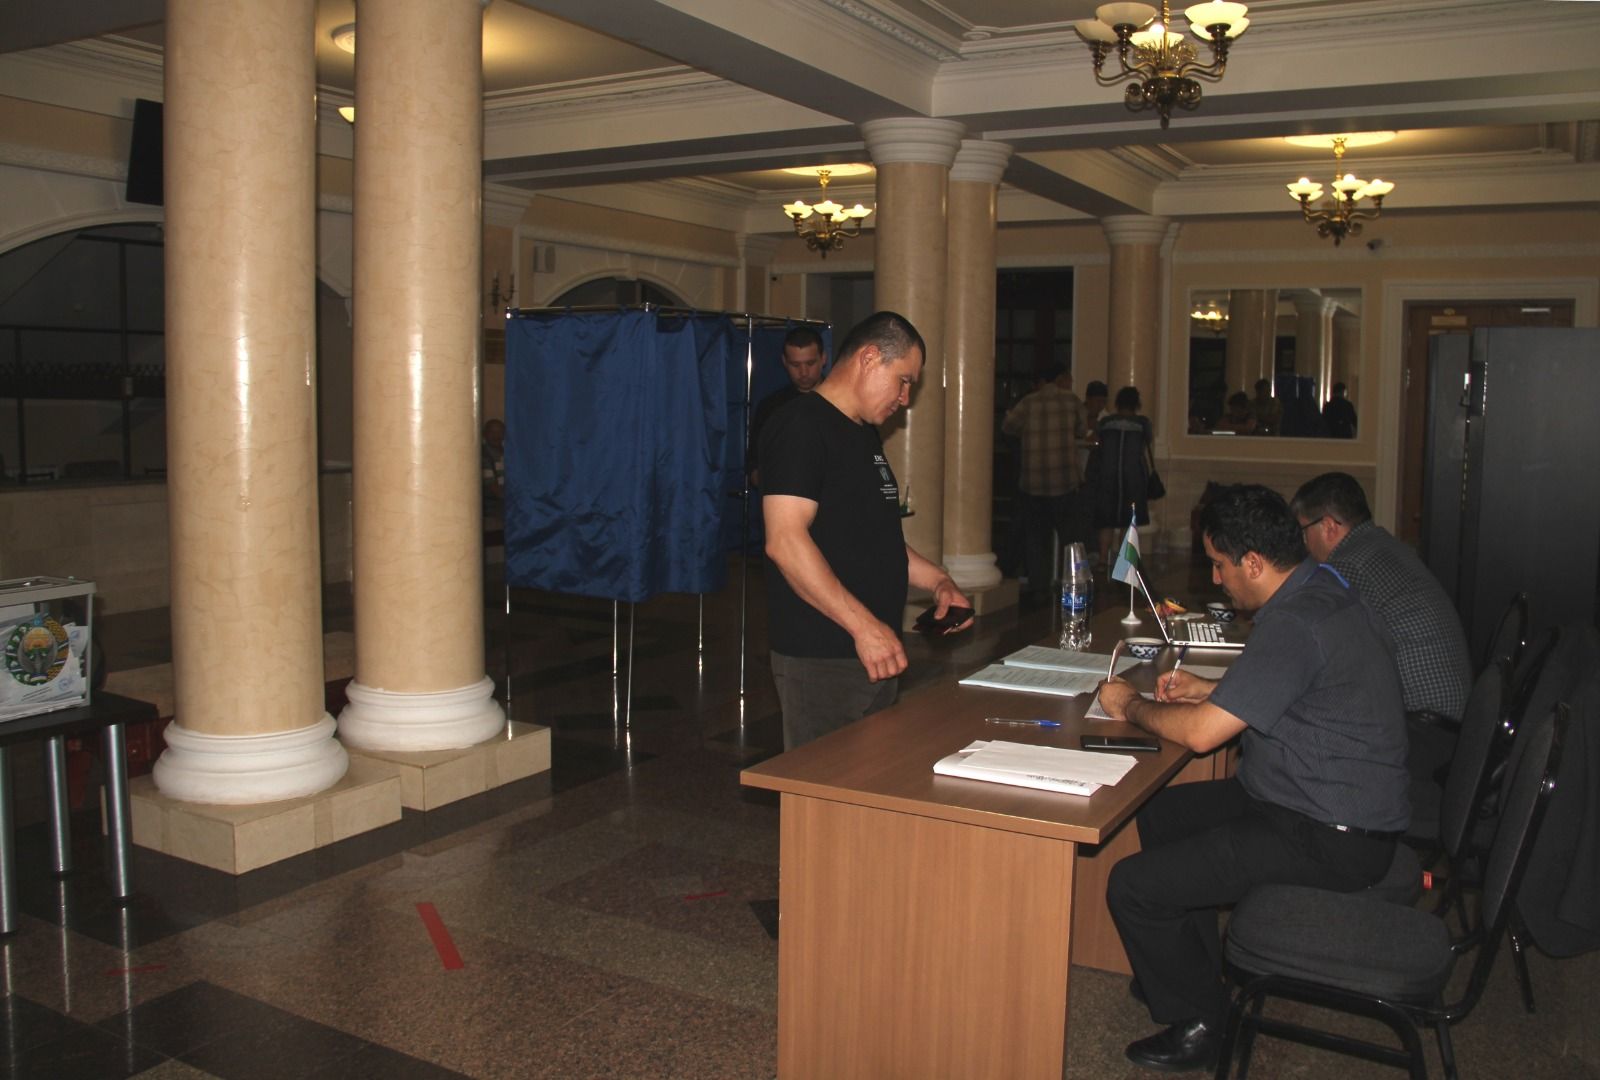 Районда яшәүче Үзбәкстан гражданнары алдан тавыш бирүдә катнаштылар